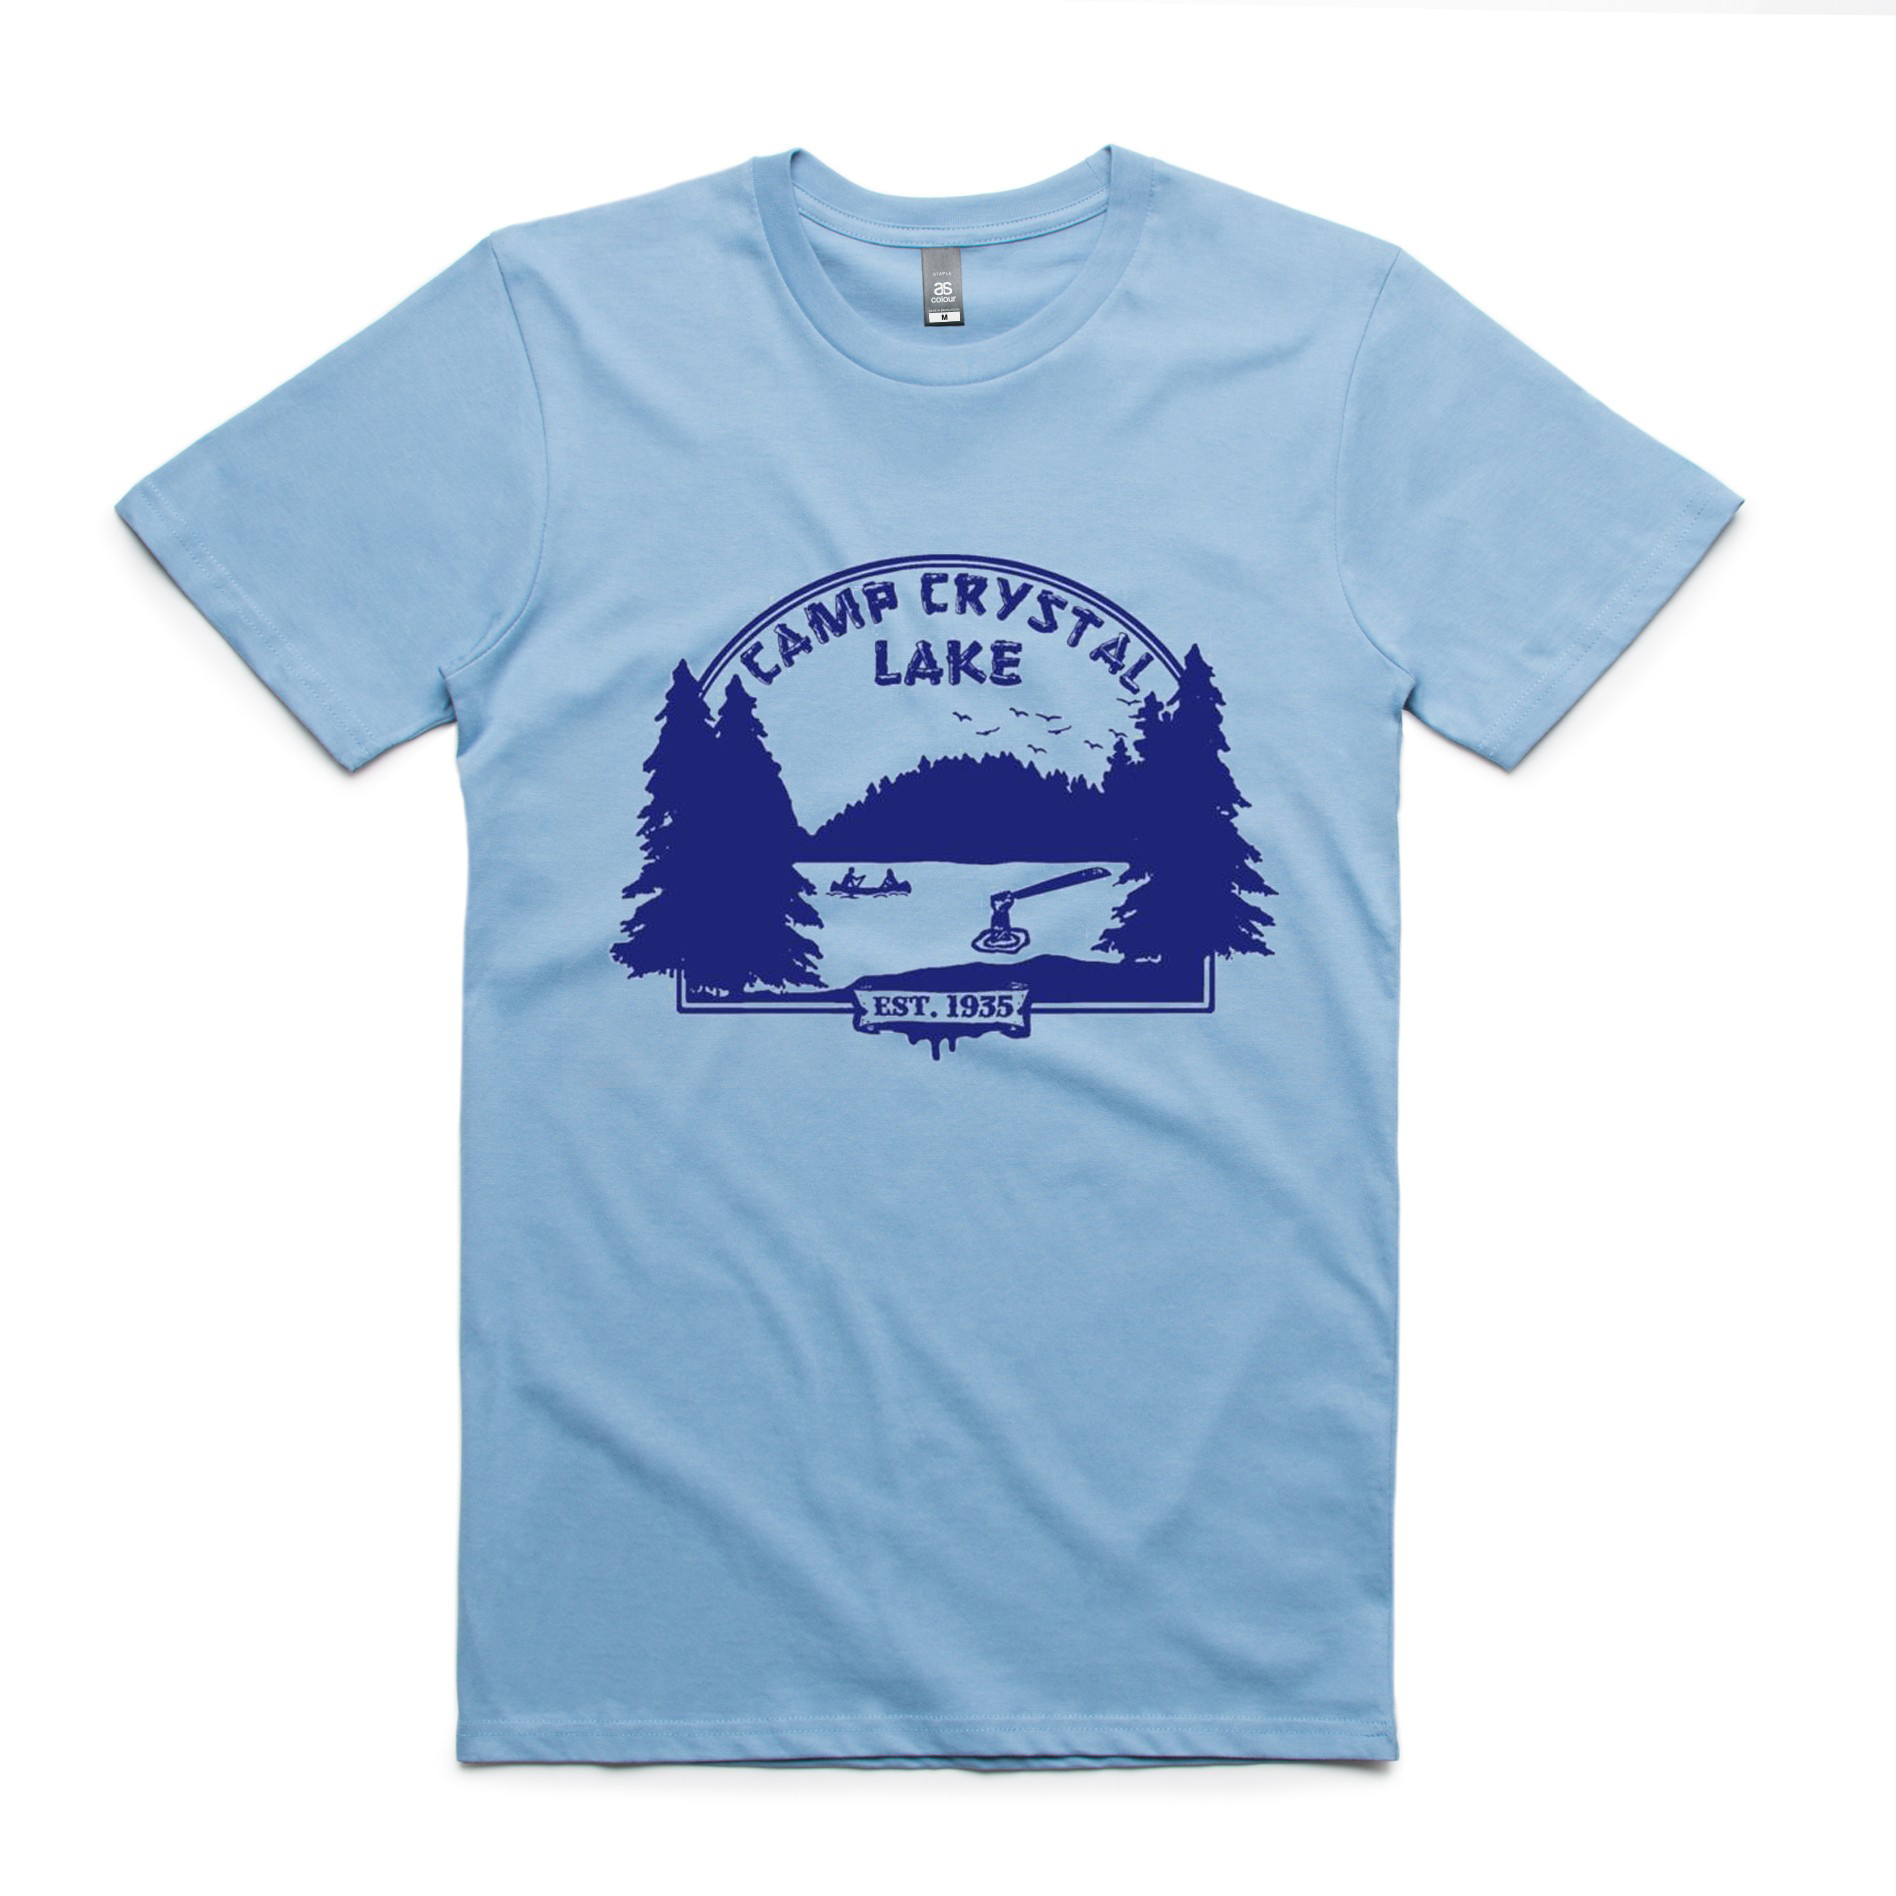 Camp Crystal Lake T Shirt